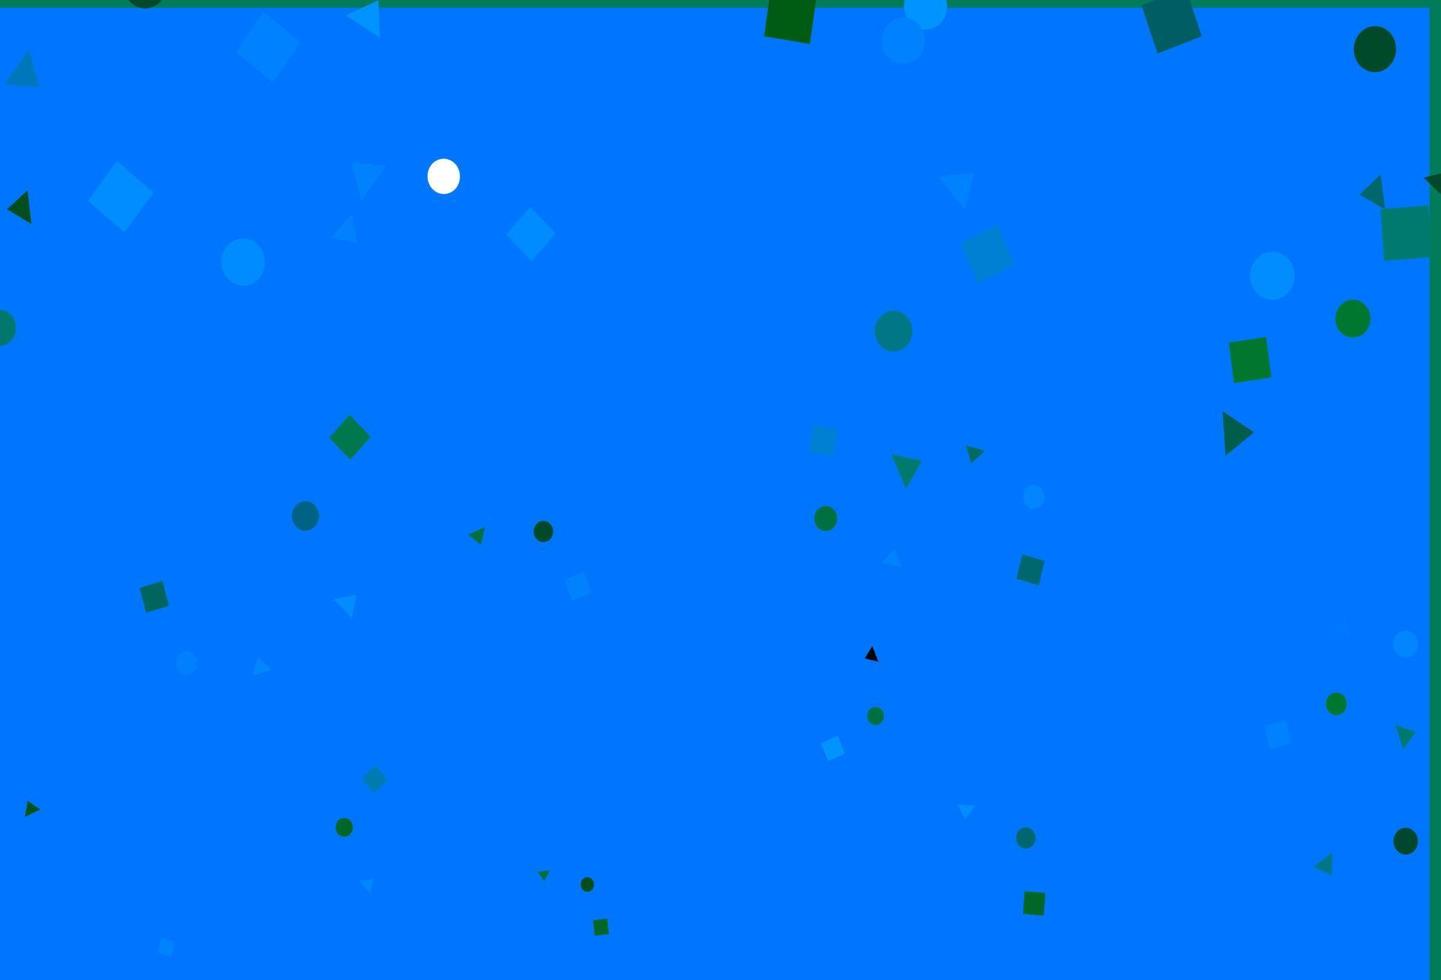 ljusblå, grön vektorlayout med cirklar, linjer, rektanglar. vektor